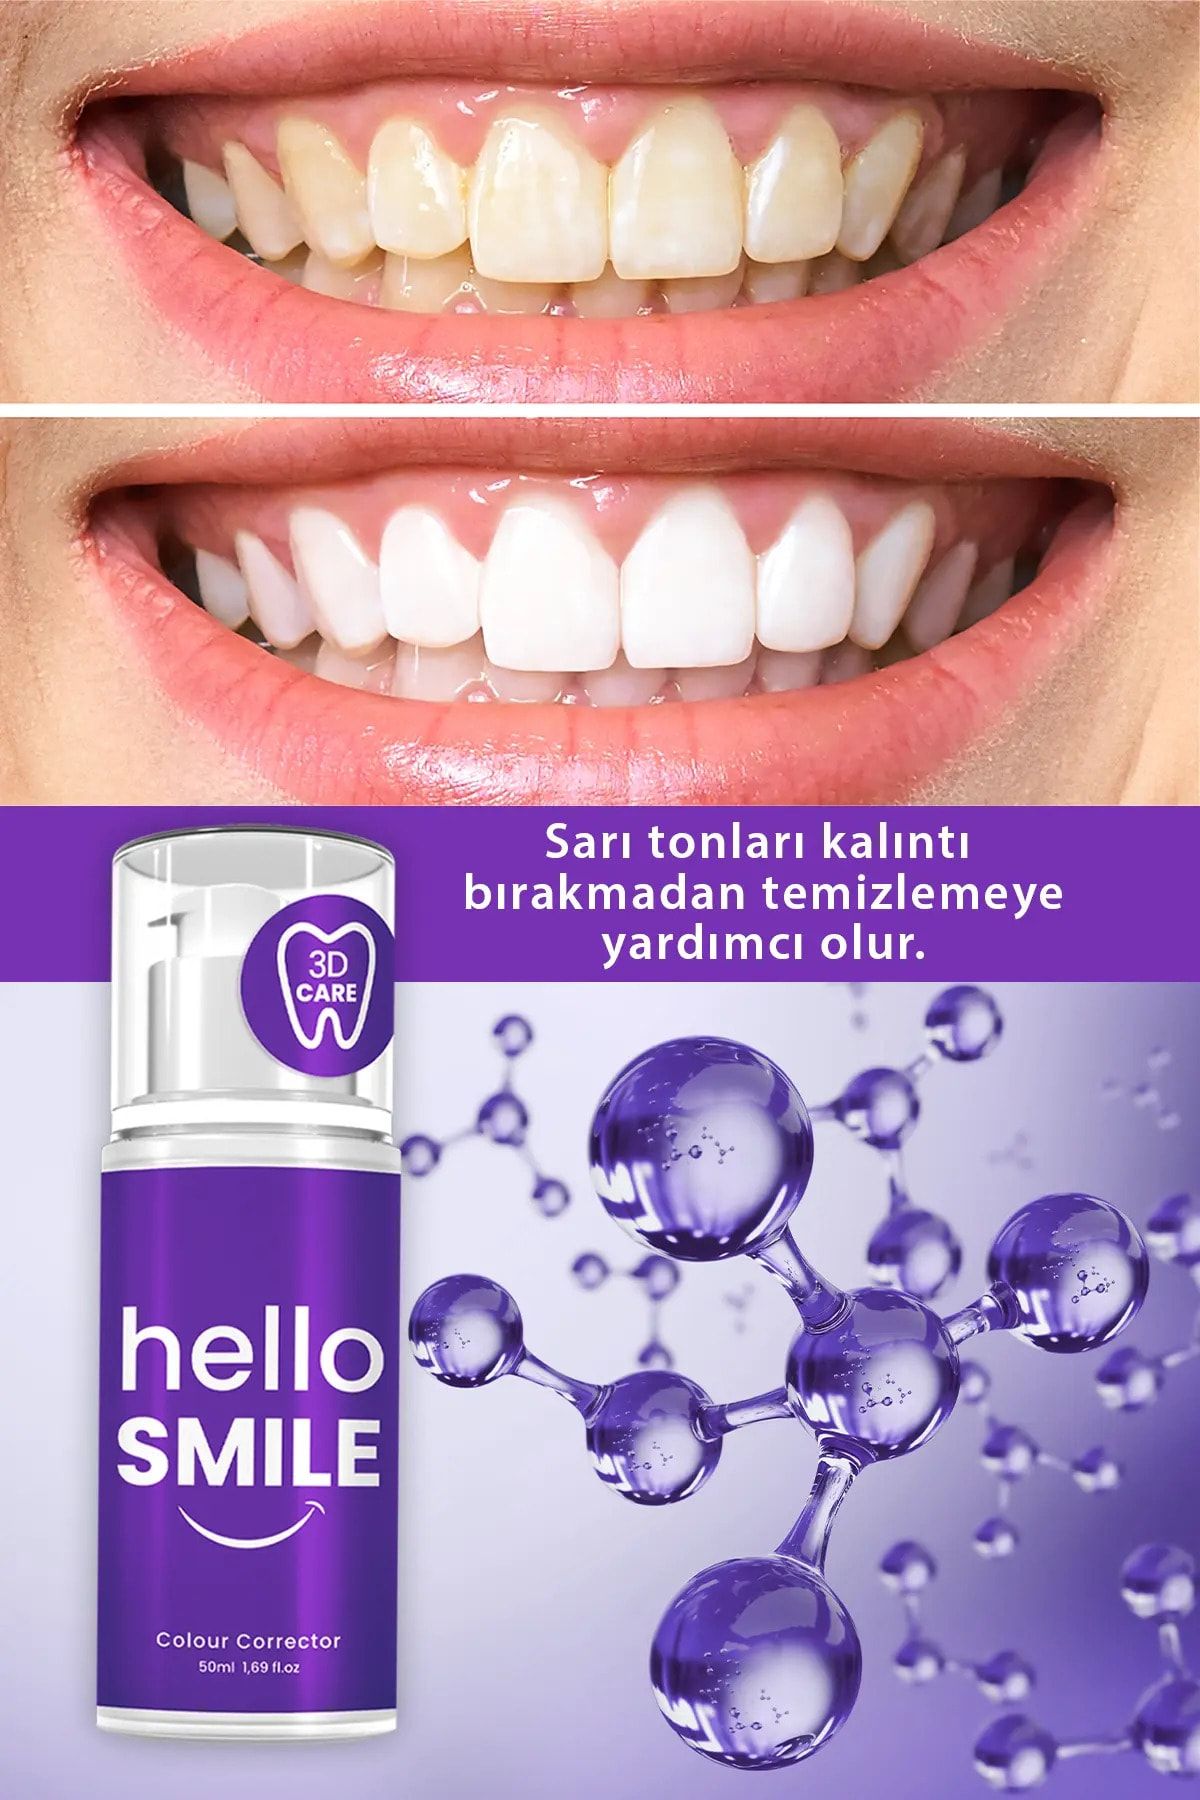 PROCSIN ژل سفید کننده فوری Hello Smile از بین بردن تمام زردی دندان 50میل